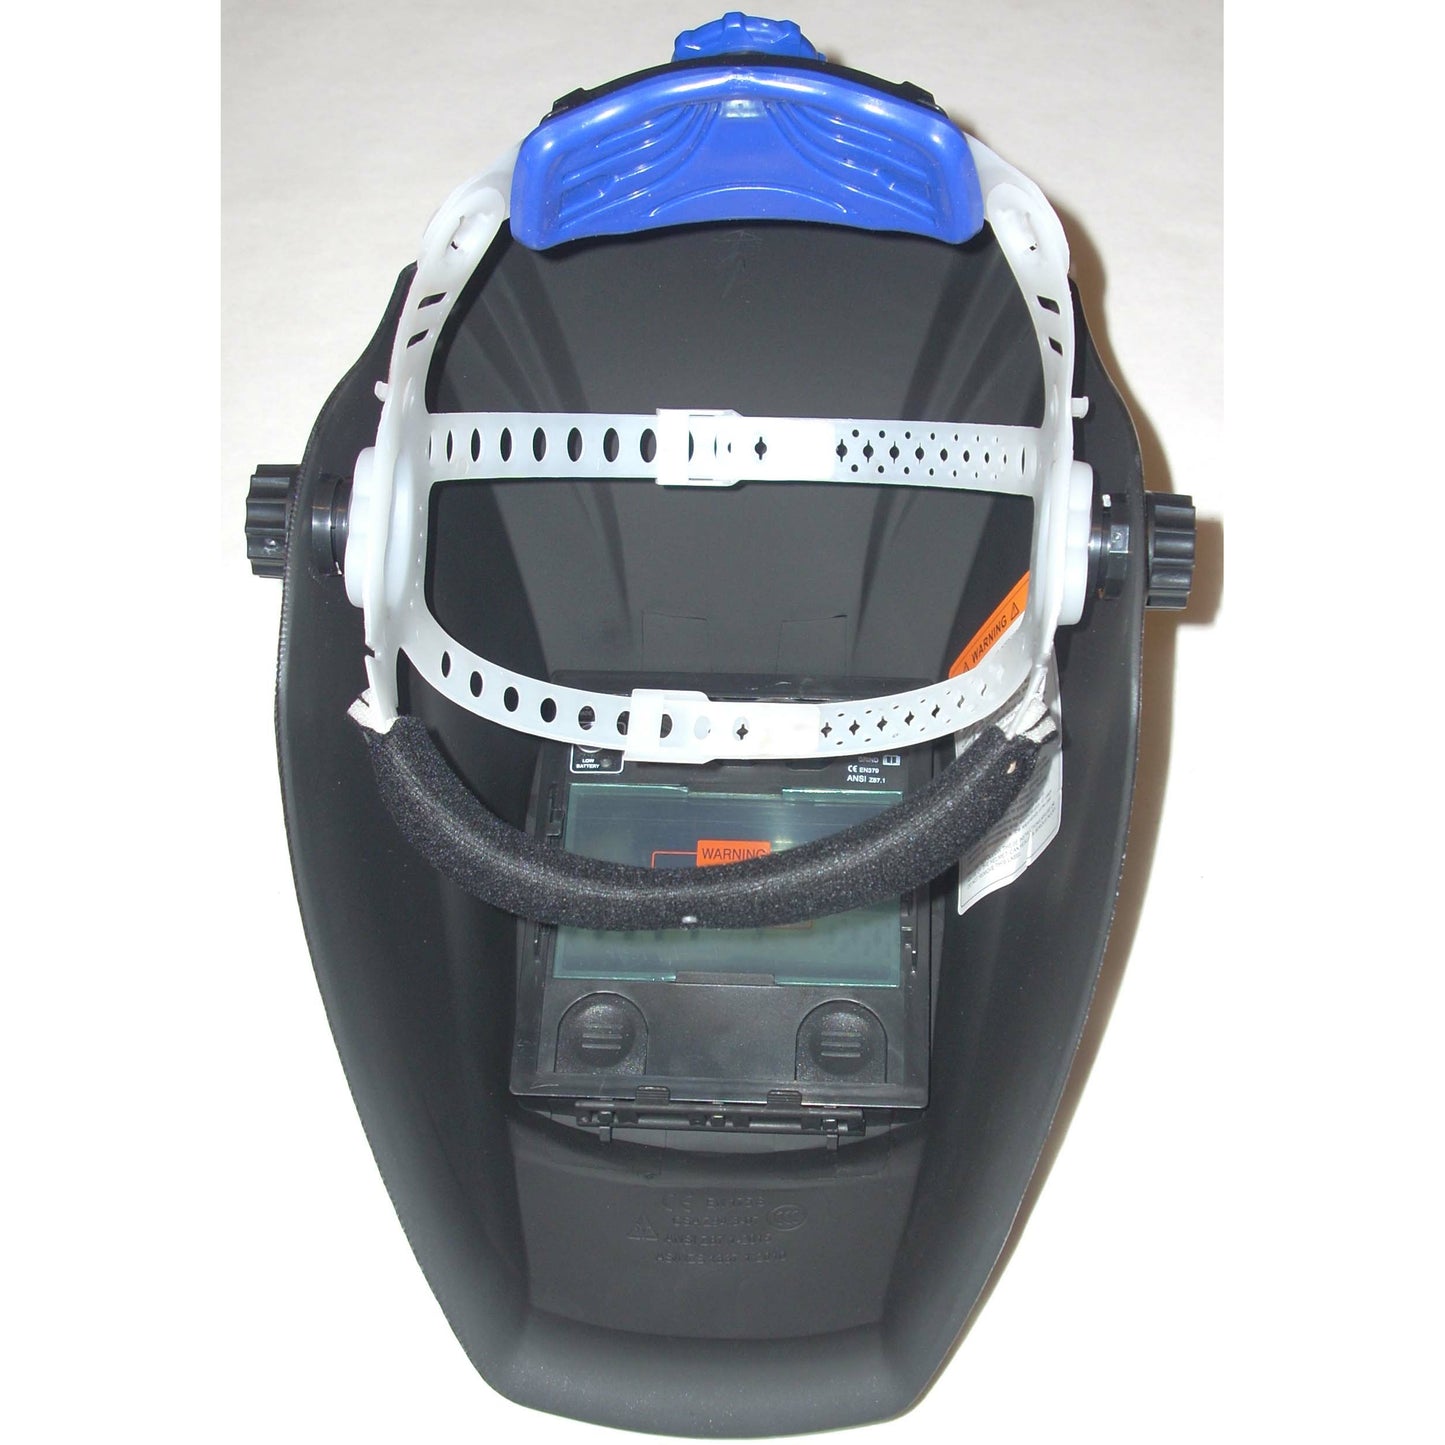 Blue Auto Darkening Helmet Variable Shade Solar & Battery Powered - ATL Welding Supply